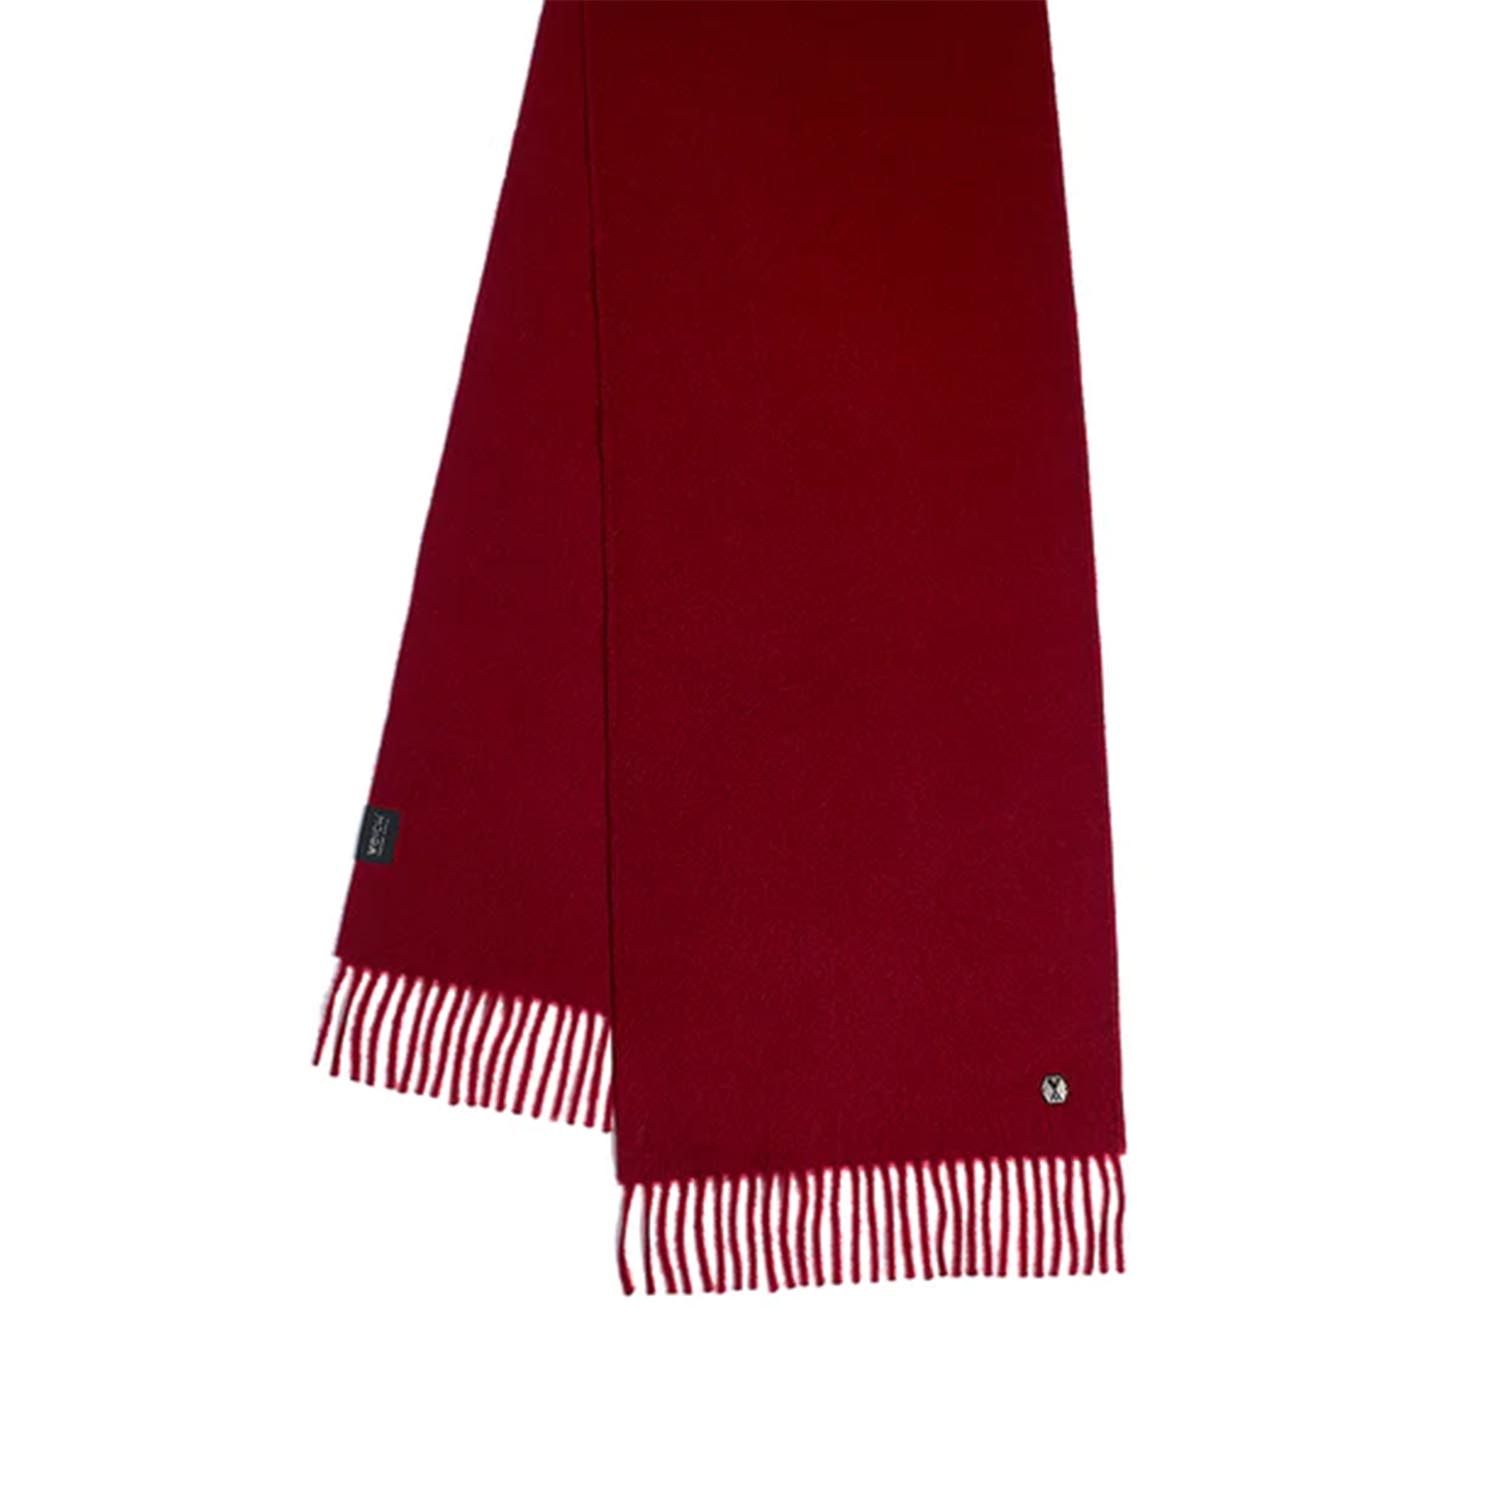 Schal Alma, Farbe wine red von Weich Couture Alpaca